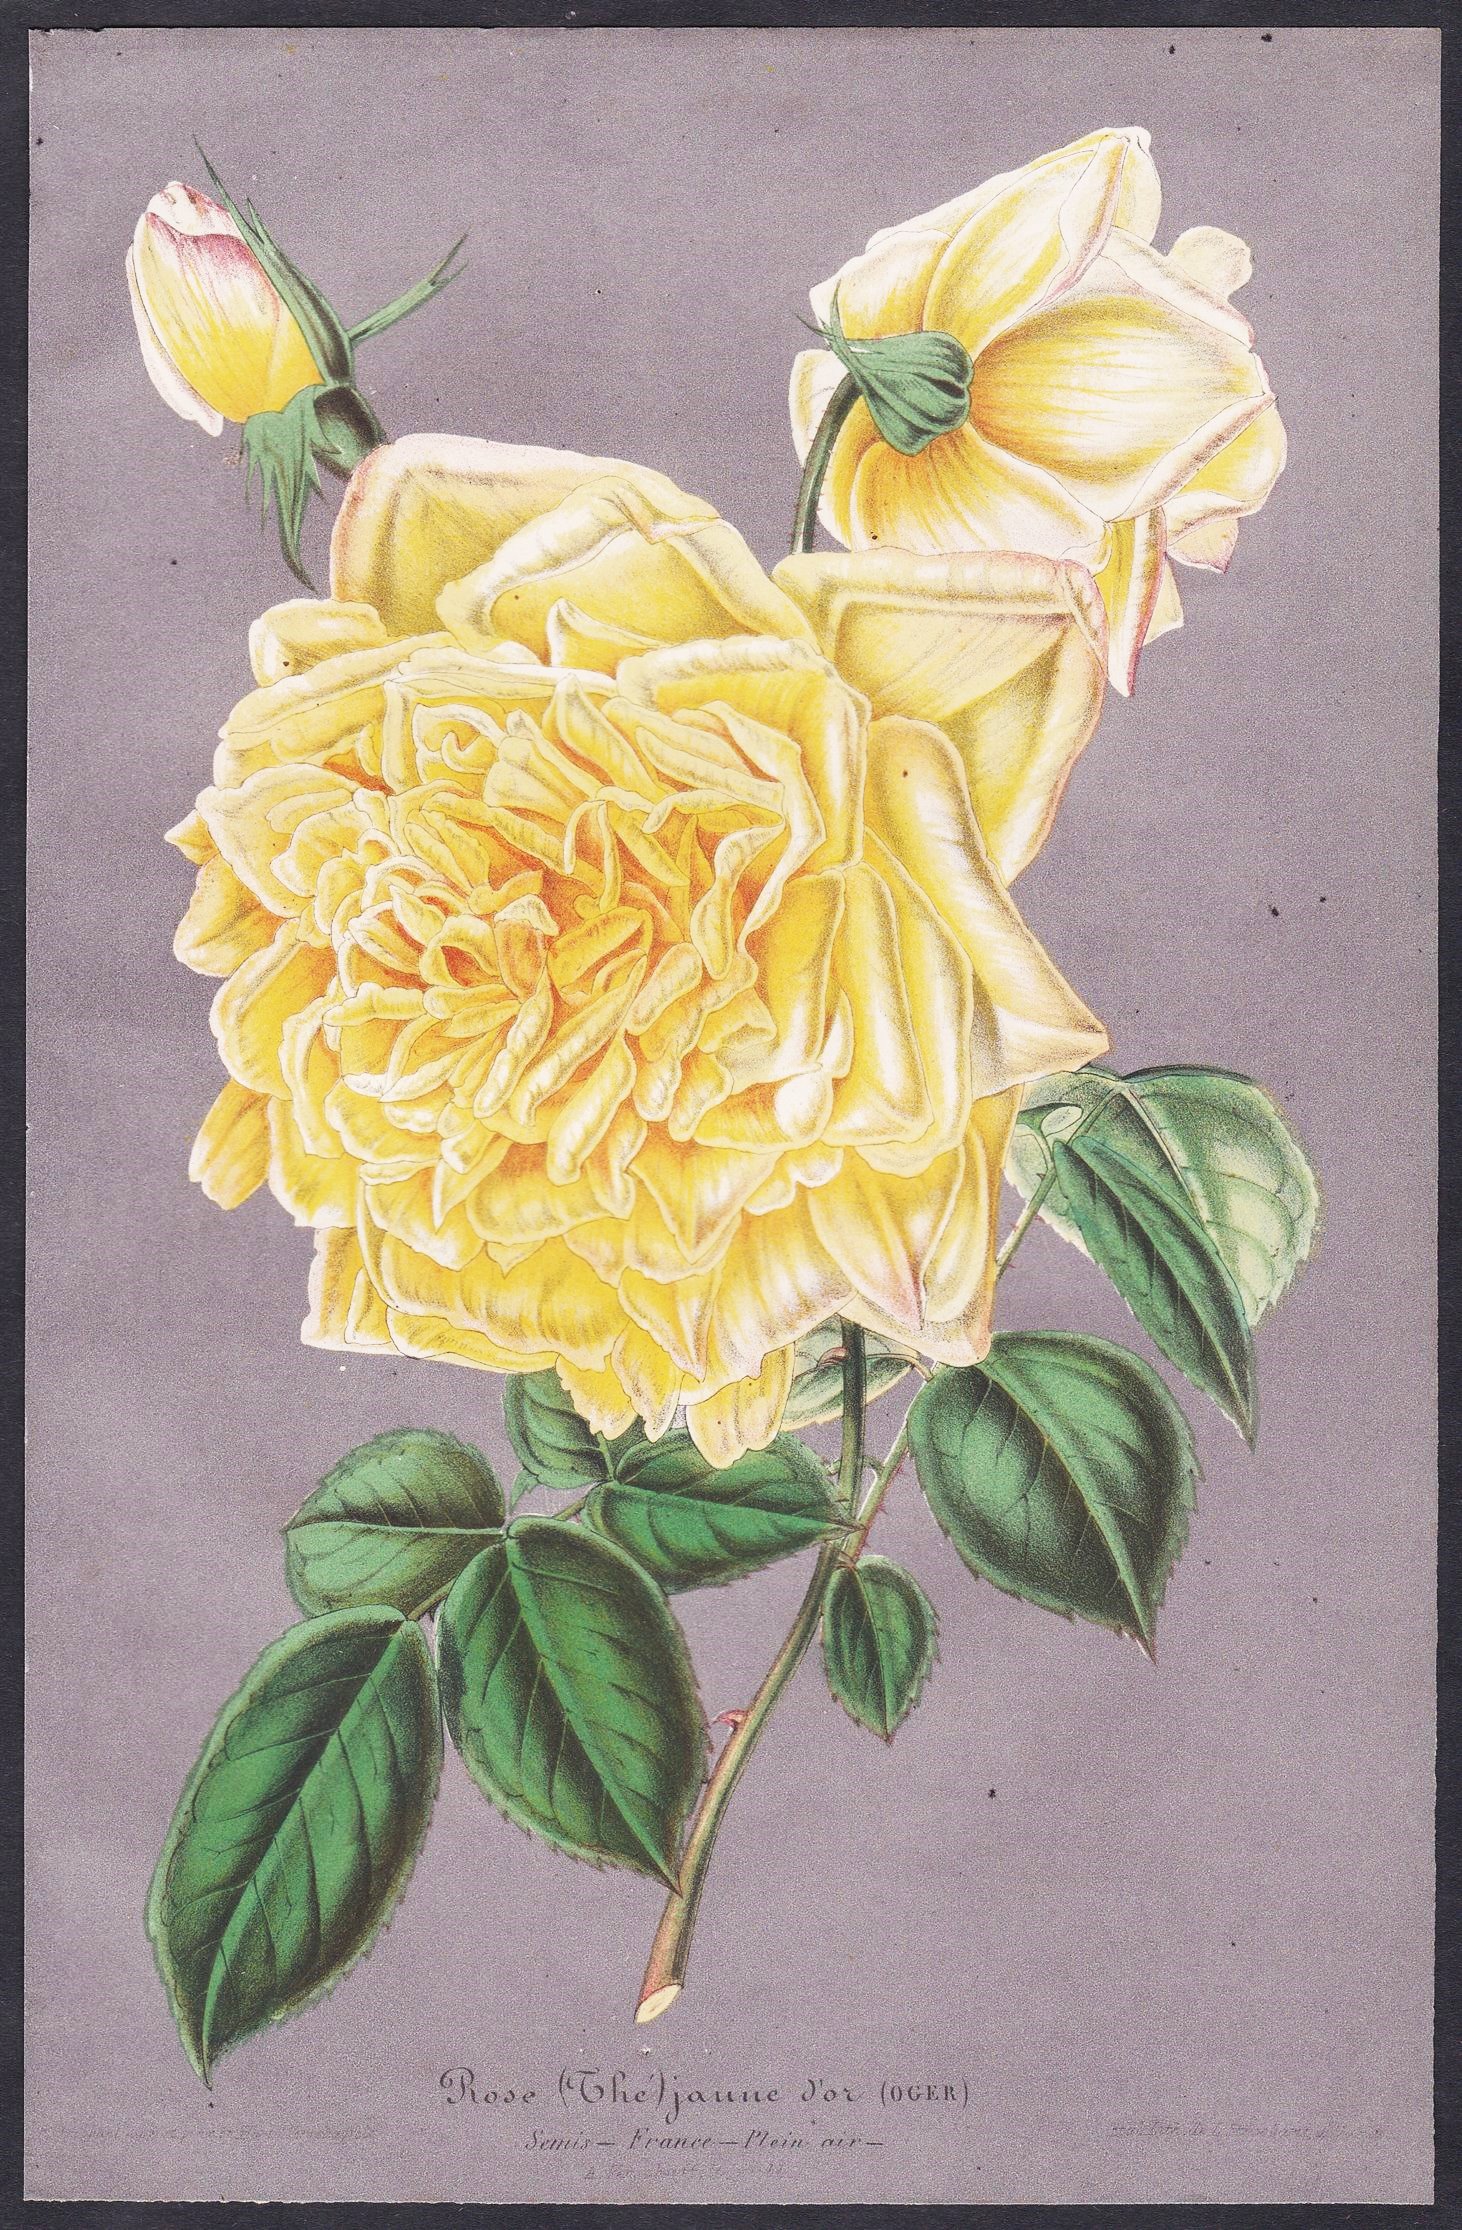 Rose (Thé) jaune d'or - yellow rose Rosen